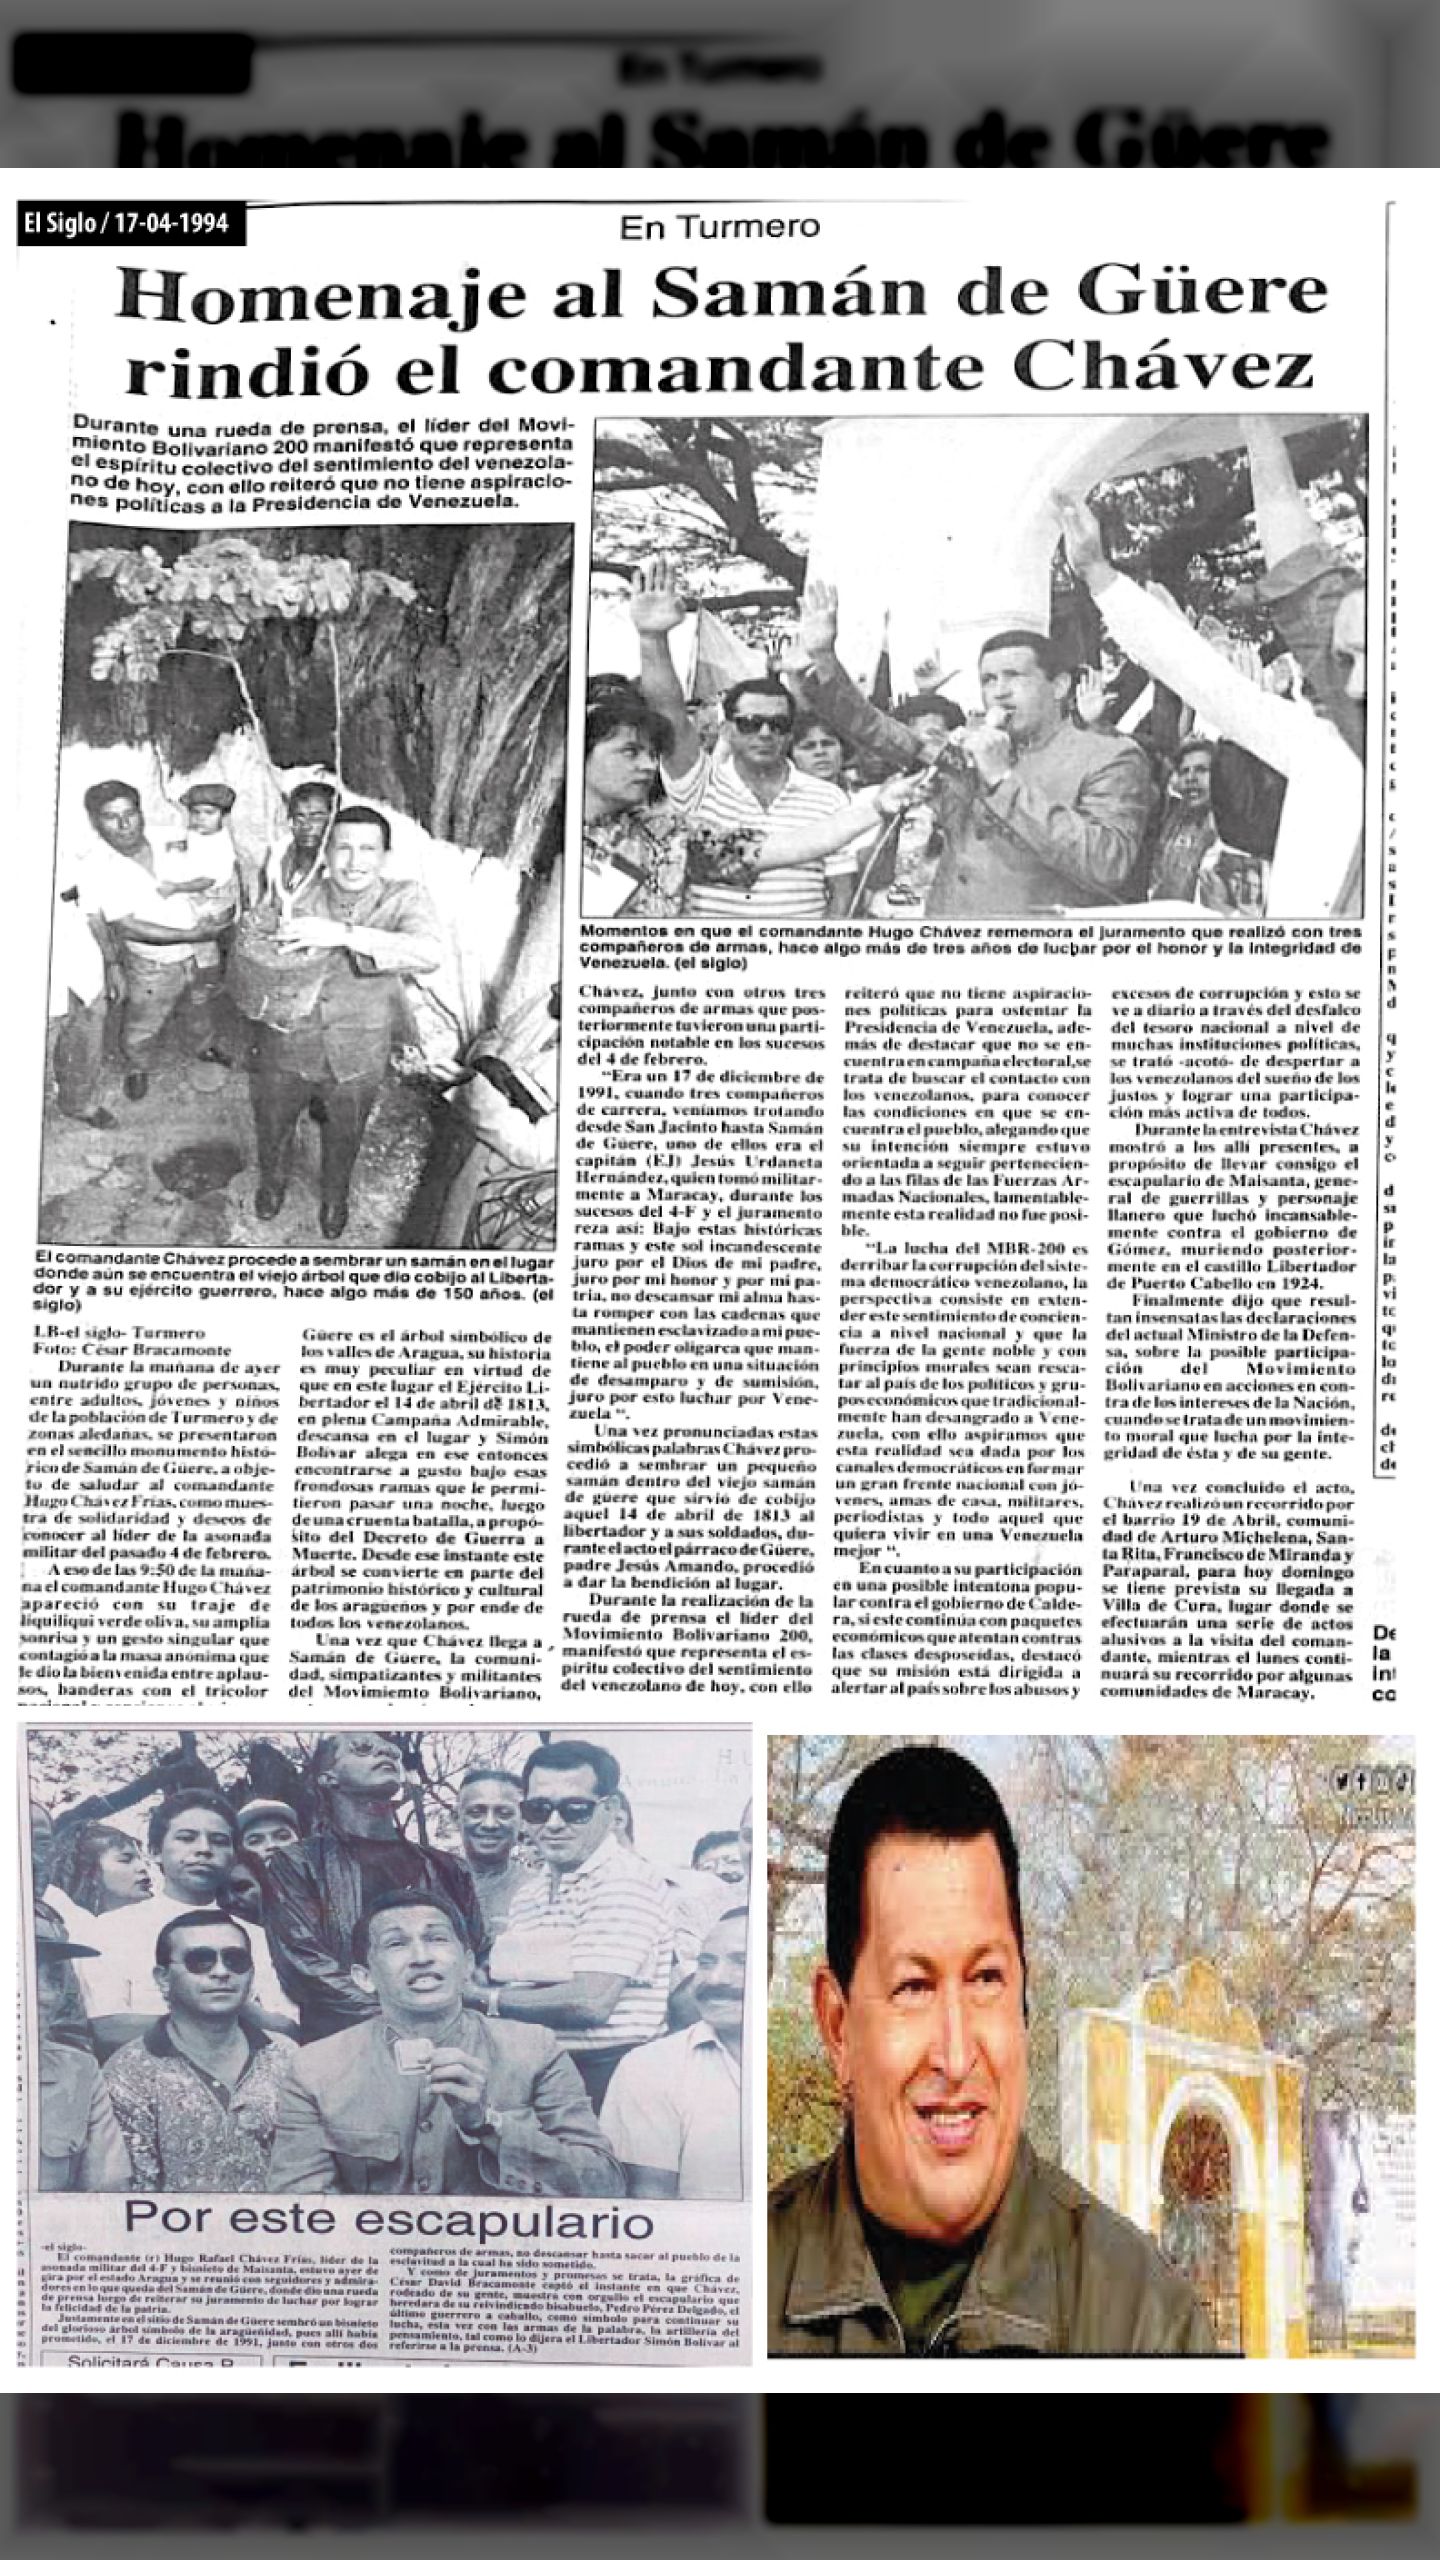 EL COMANDANTE CHÁVEZ RATIFICA  EL JURAMENTO FUNDACIONAL DEL MBR-200 ANTE SAMÁN DE GÜERE (EL SIGLO, 17 de abril de 1994)